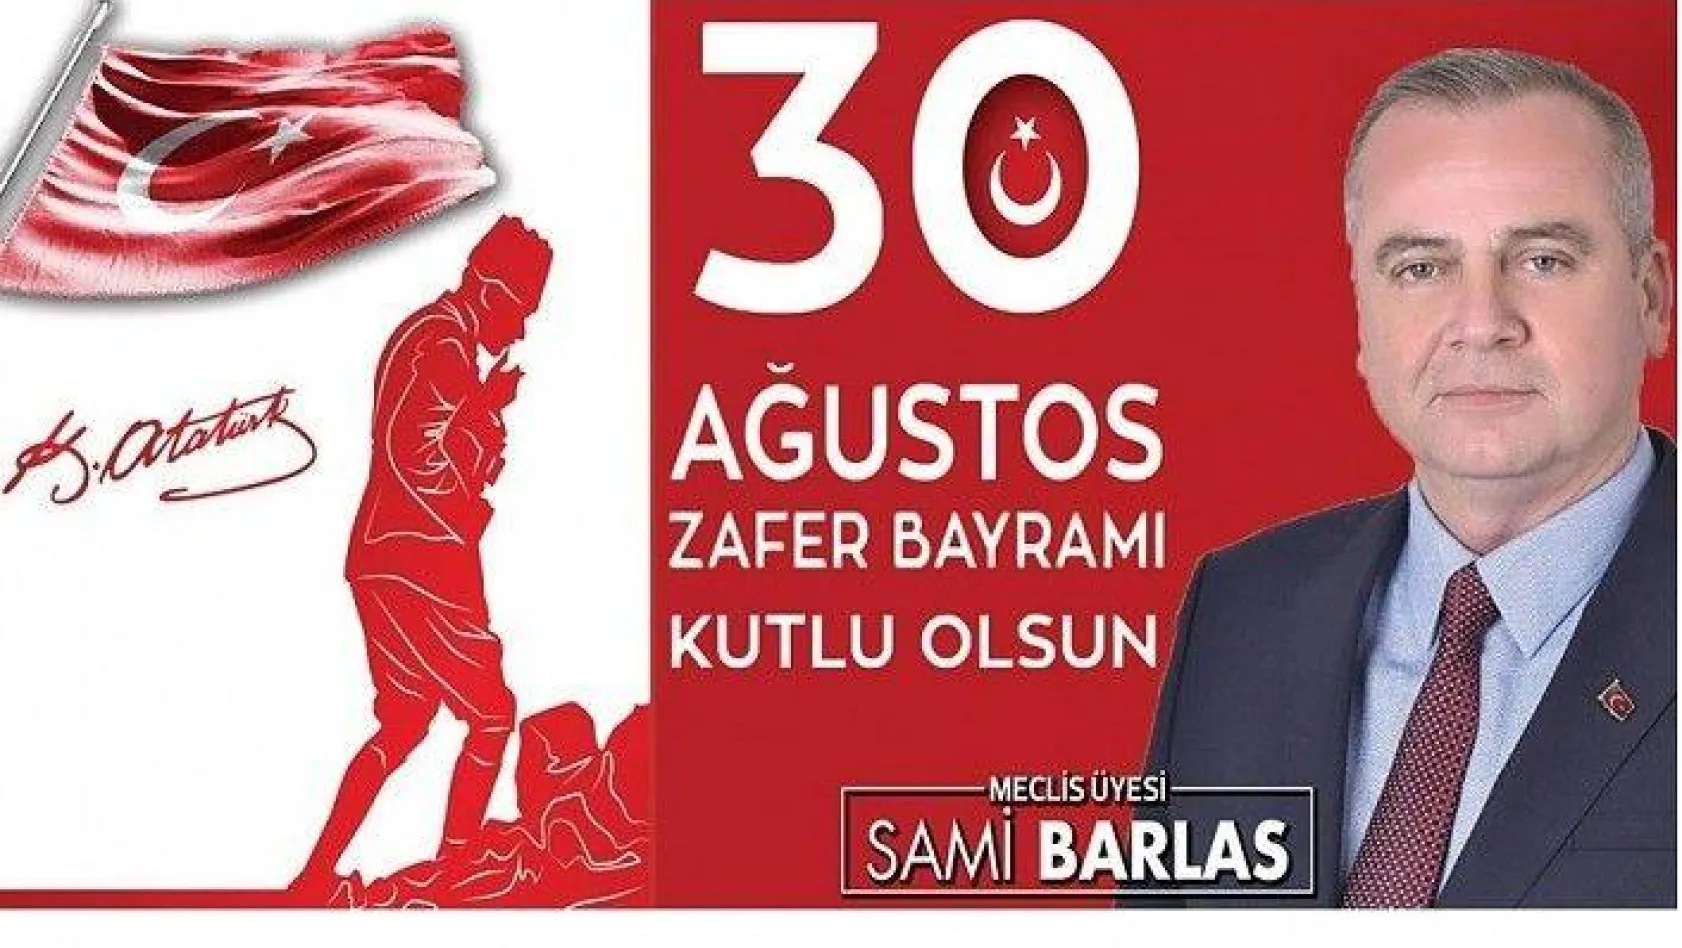 İBB Meclis üyesi Sami Barlas,30 Ağustos Zafer Bayramı mesajı